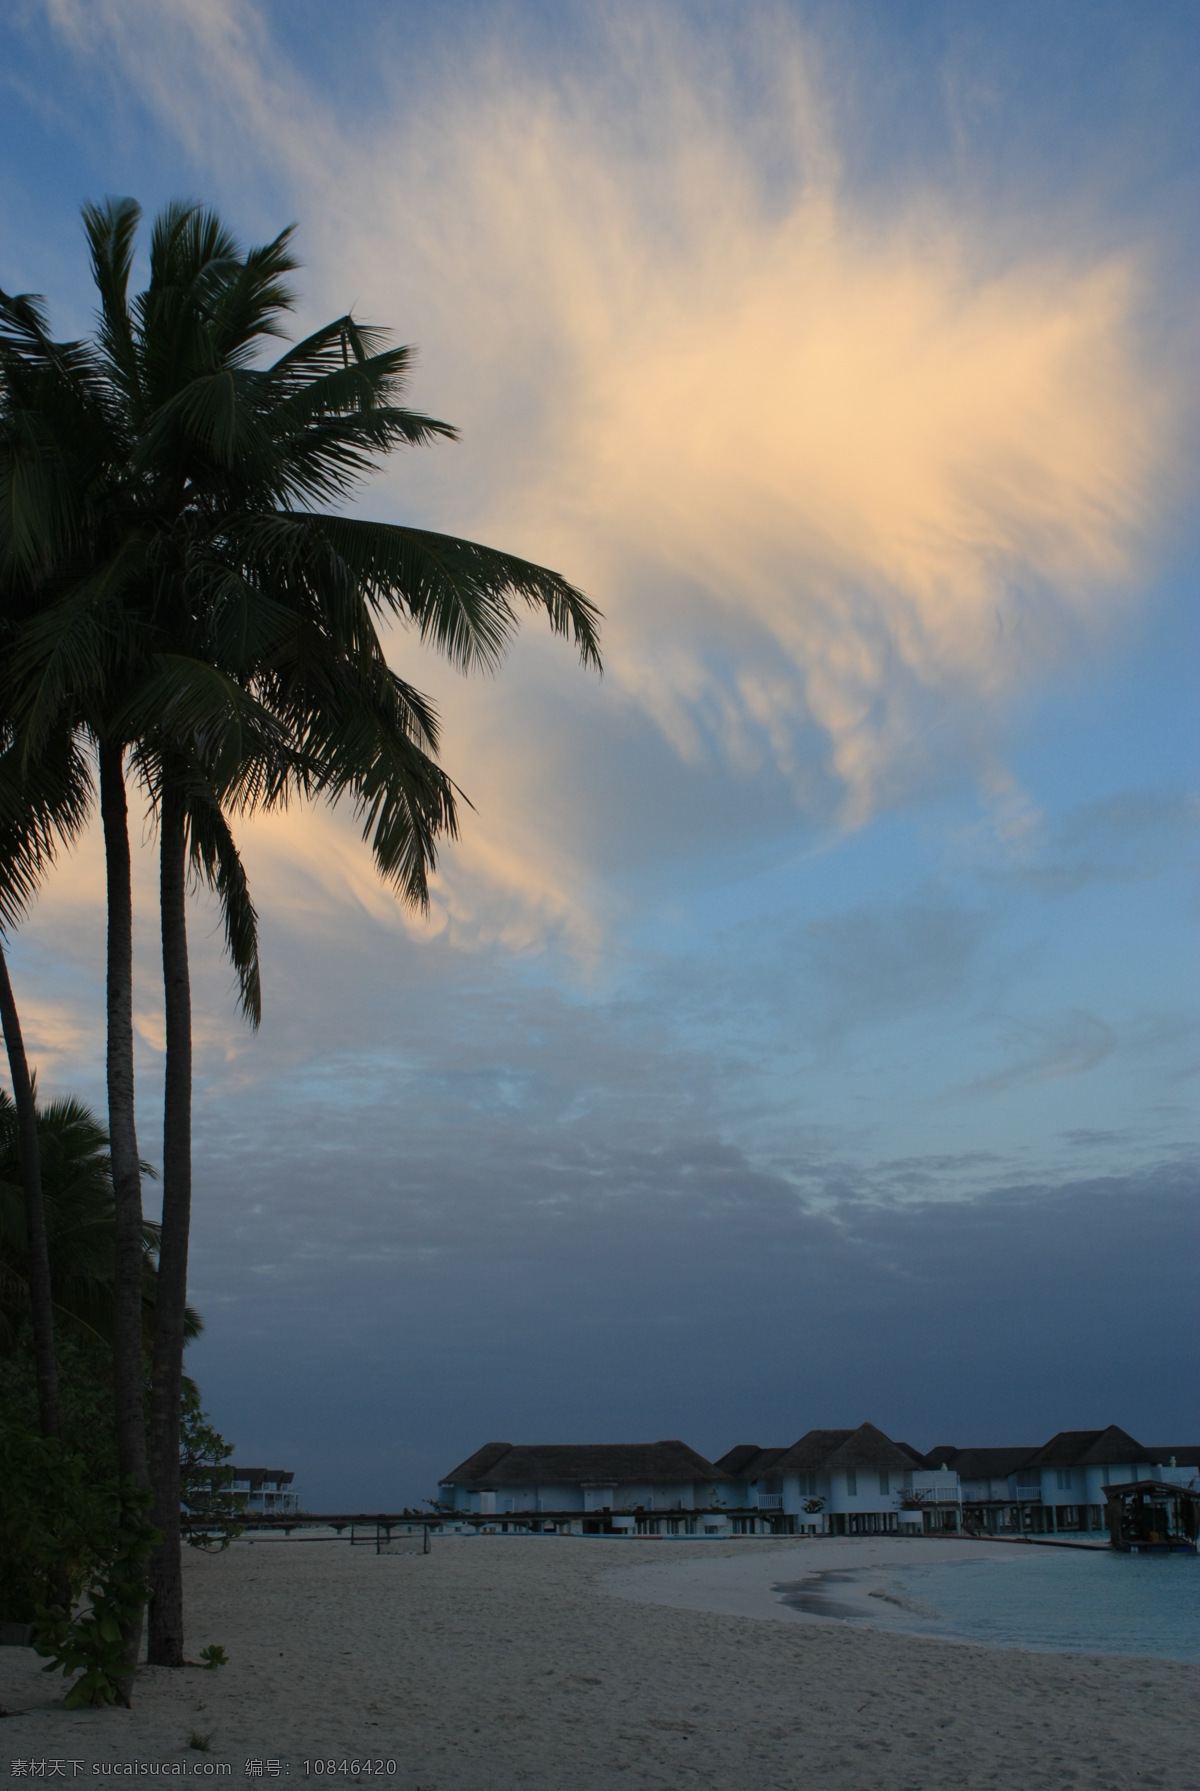 马尔代夫 风景图片 彩云 国外旅游 海滩 黄昏 旅游摄影 沙滩 马尔代夫风景 水屋 椰树 psd源文件